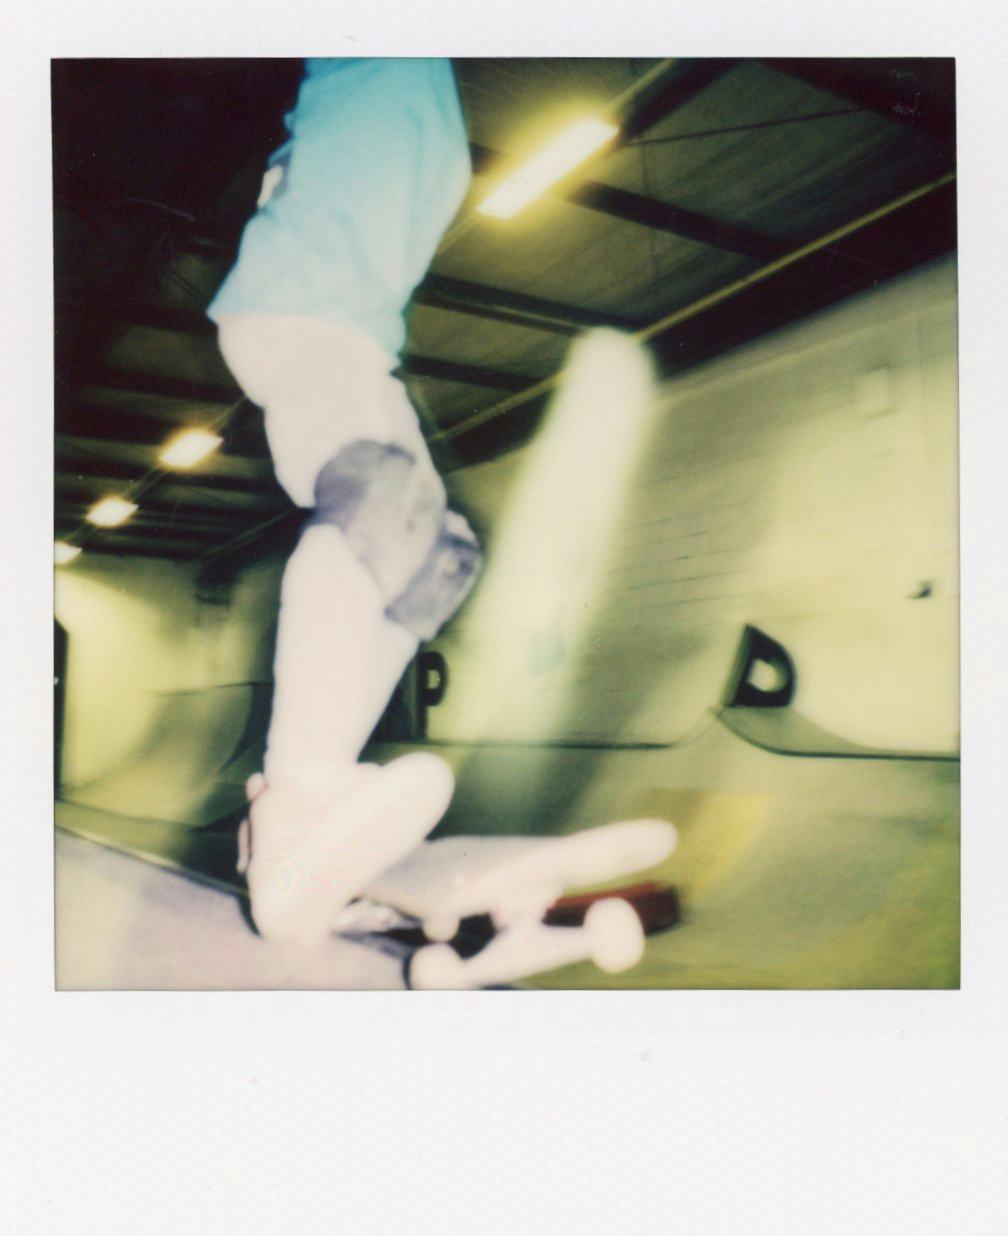 Polaroid of kid skating on ramp